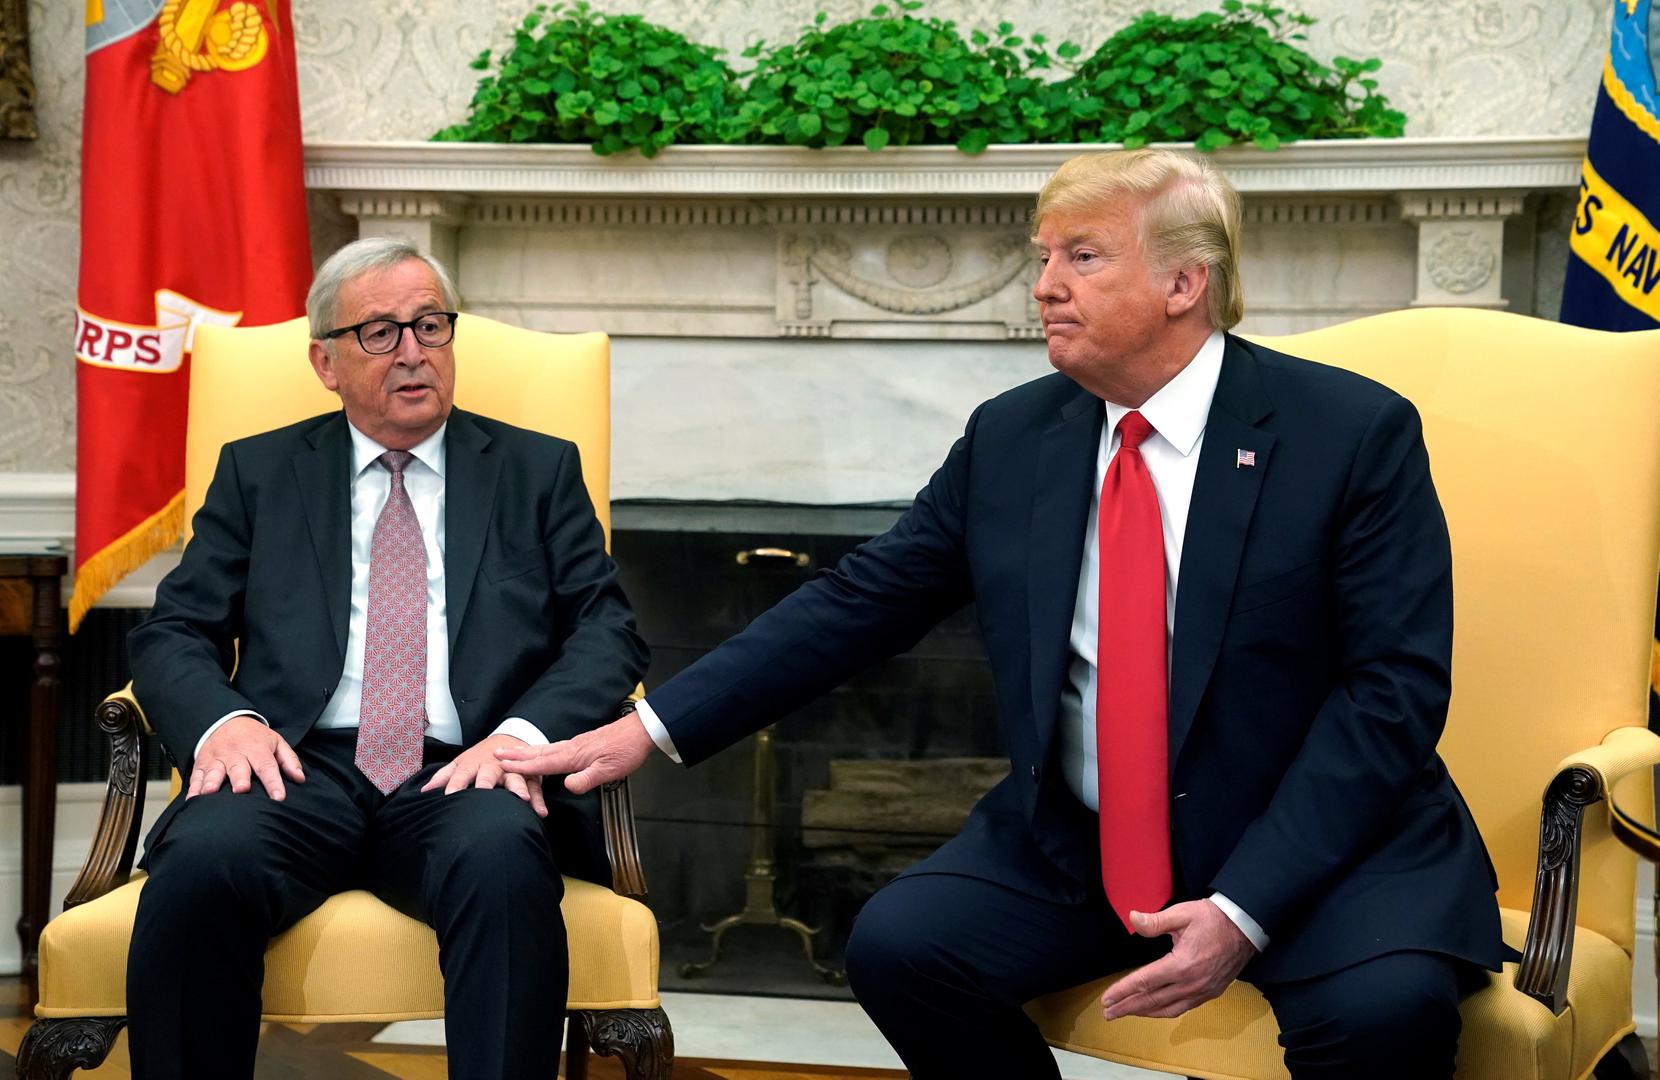 Iako su Juncker i Trump nakon sastanka bili vrlo zadovoljni, nisu govorili o brojkama. No, krhki su odnosi sada poboljšani